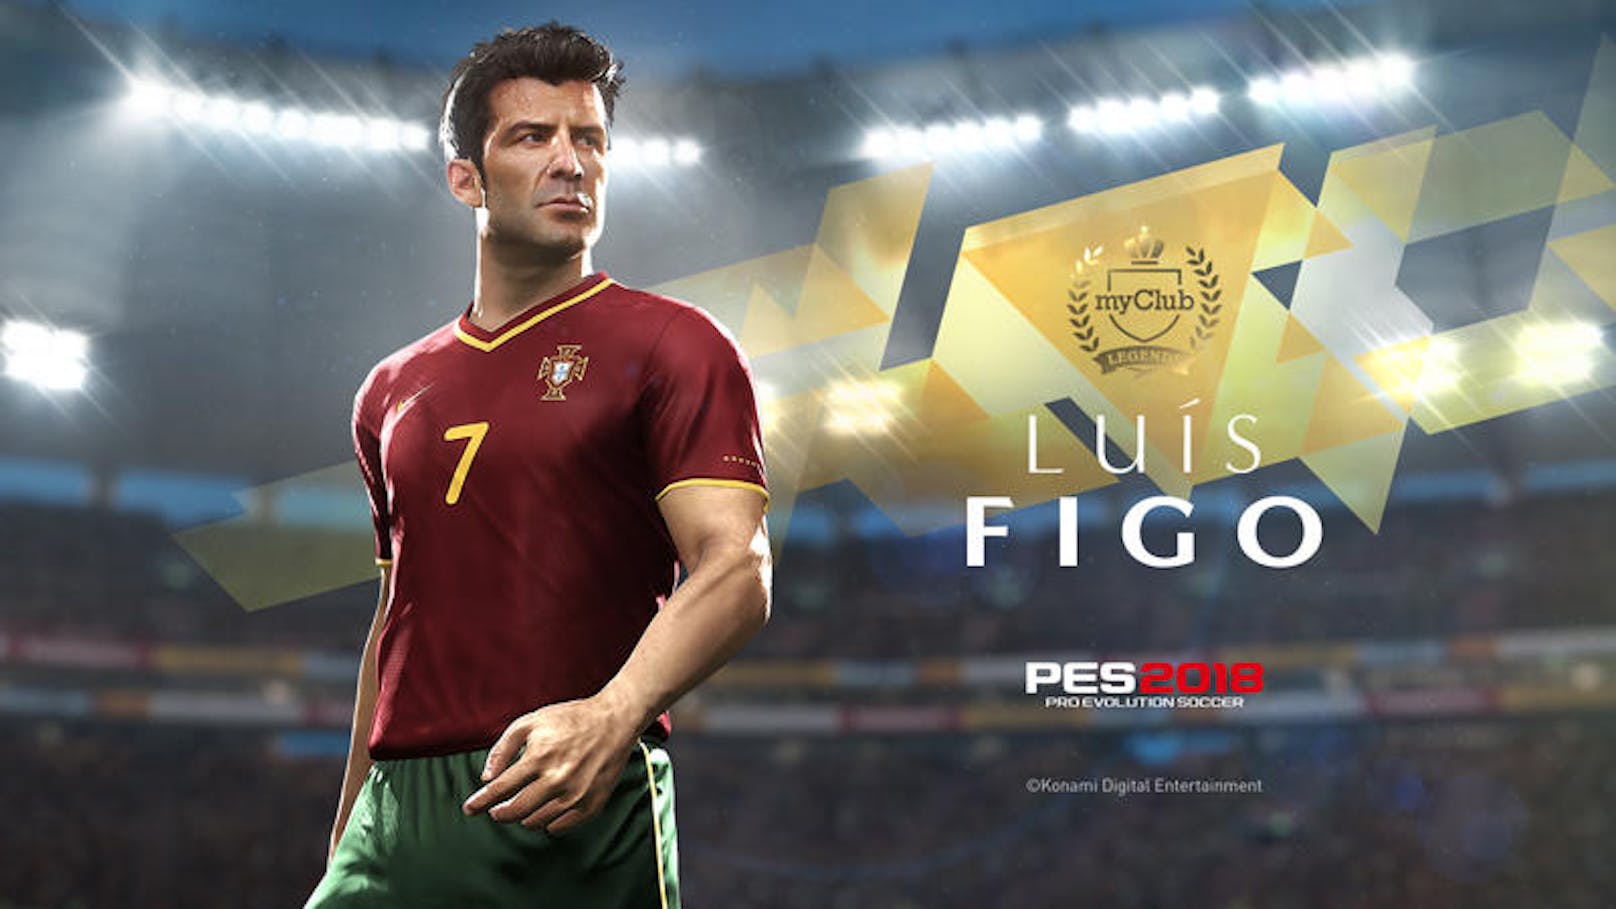 Konami Digital Entertainment freut sich bekannt zu geben, dass die portugiesische Fußball-Ikone Luís Figo ab sofort als legendärer Spieler in PES 2018 verfügbar ist.